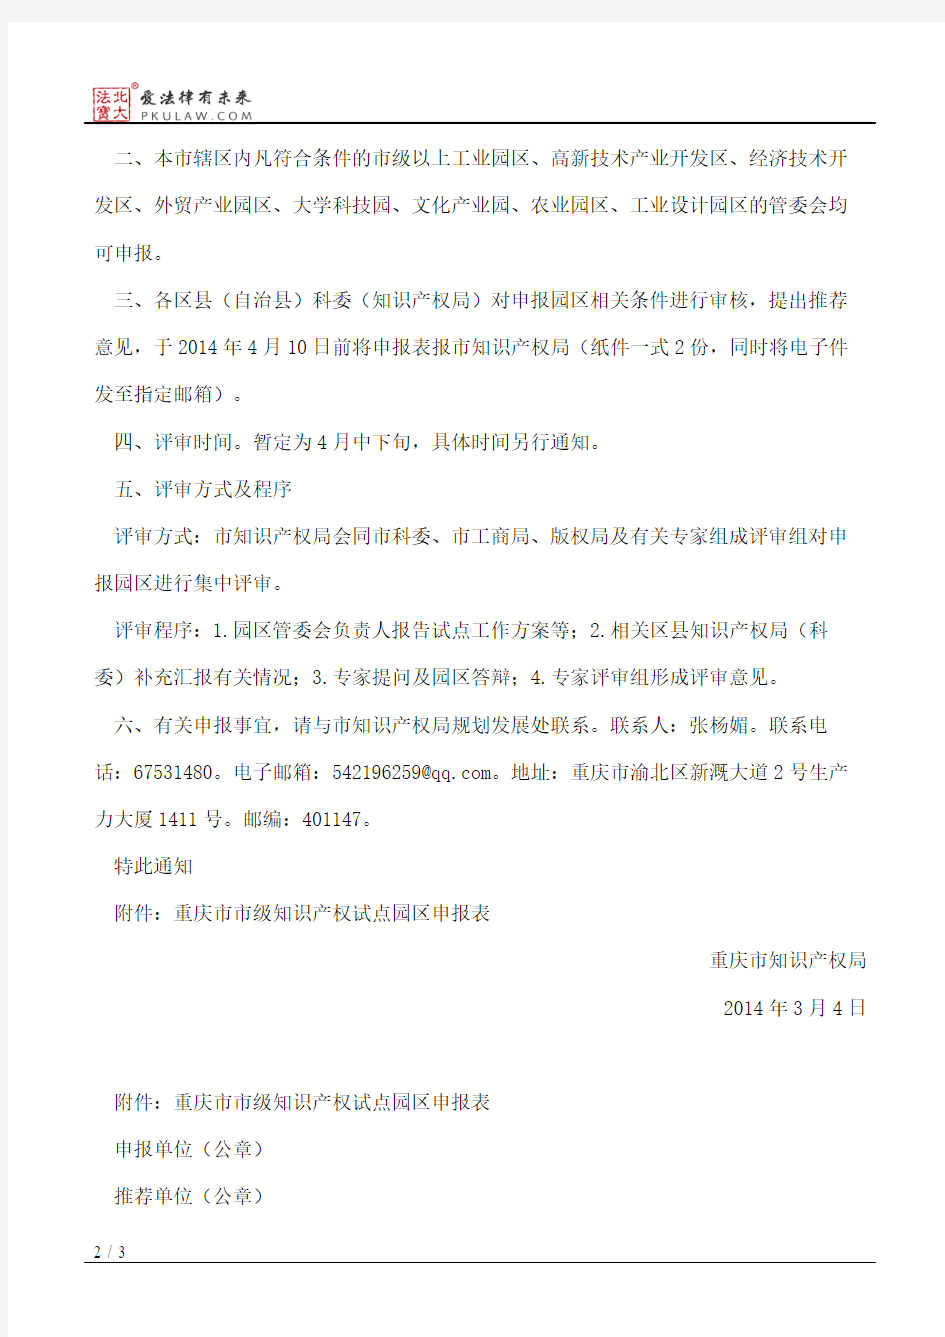 重庆市知识产权局关于申报第四批市级知识产权试点园区的通知